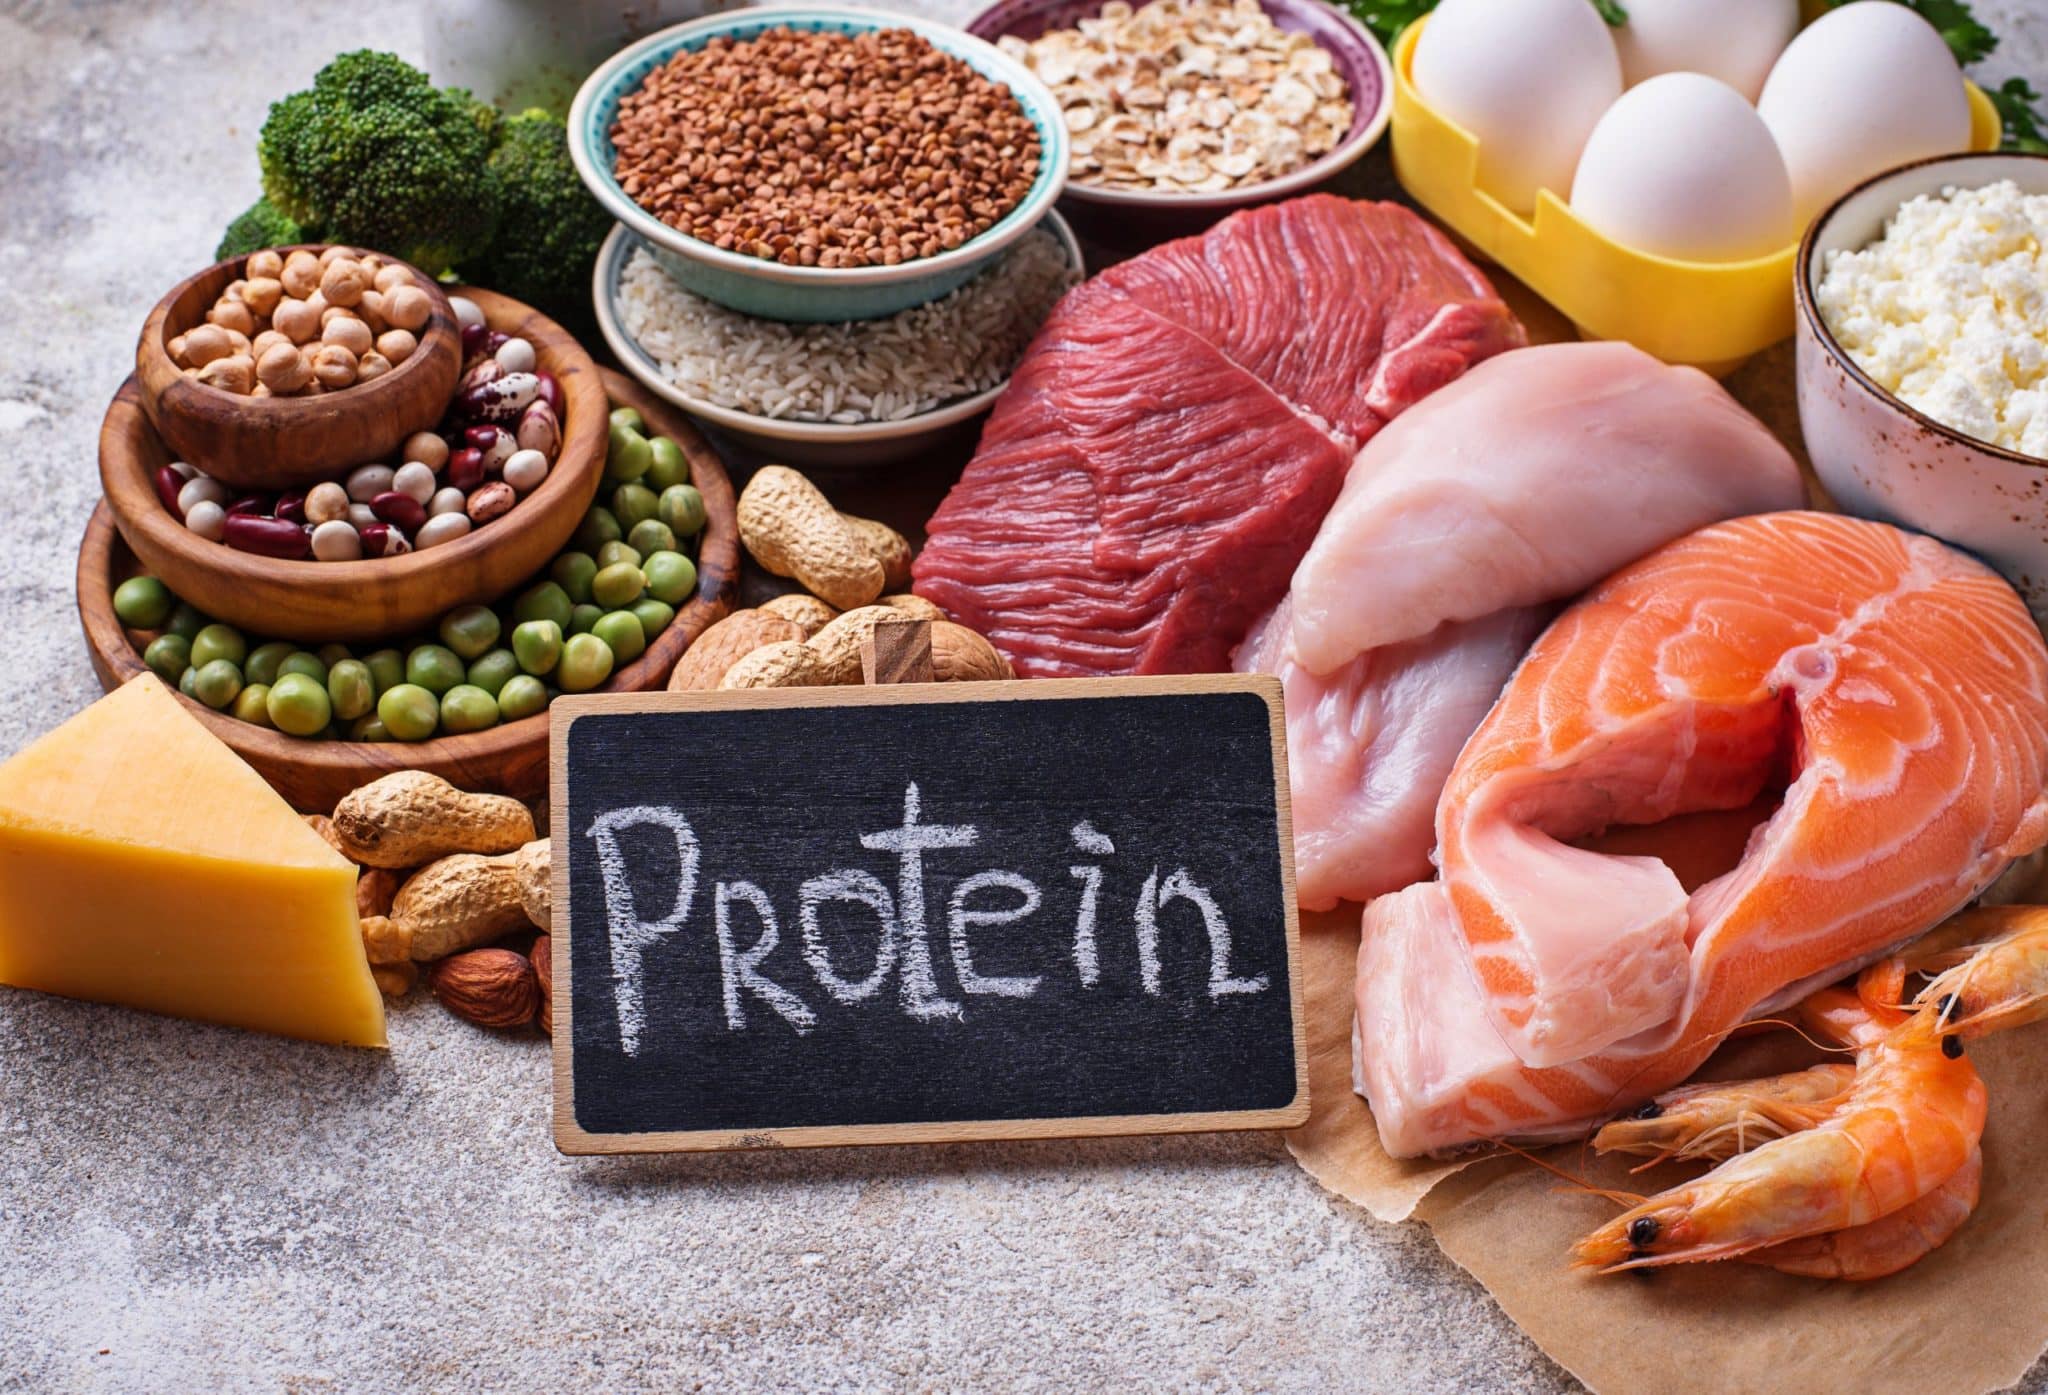 alimenti ricchi di proteine